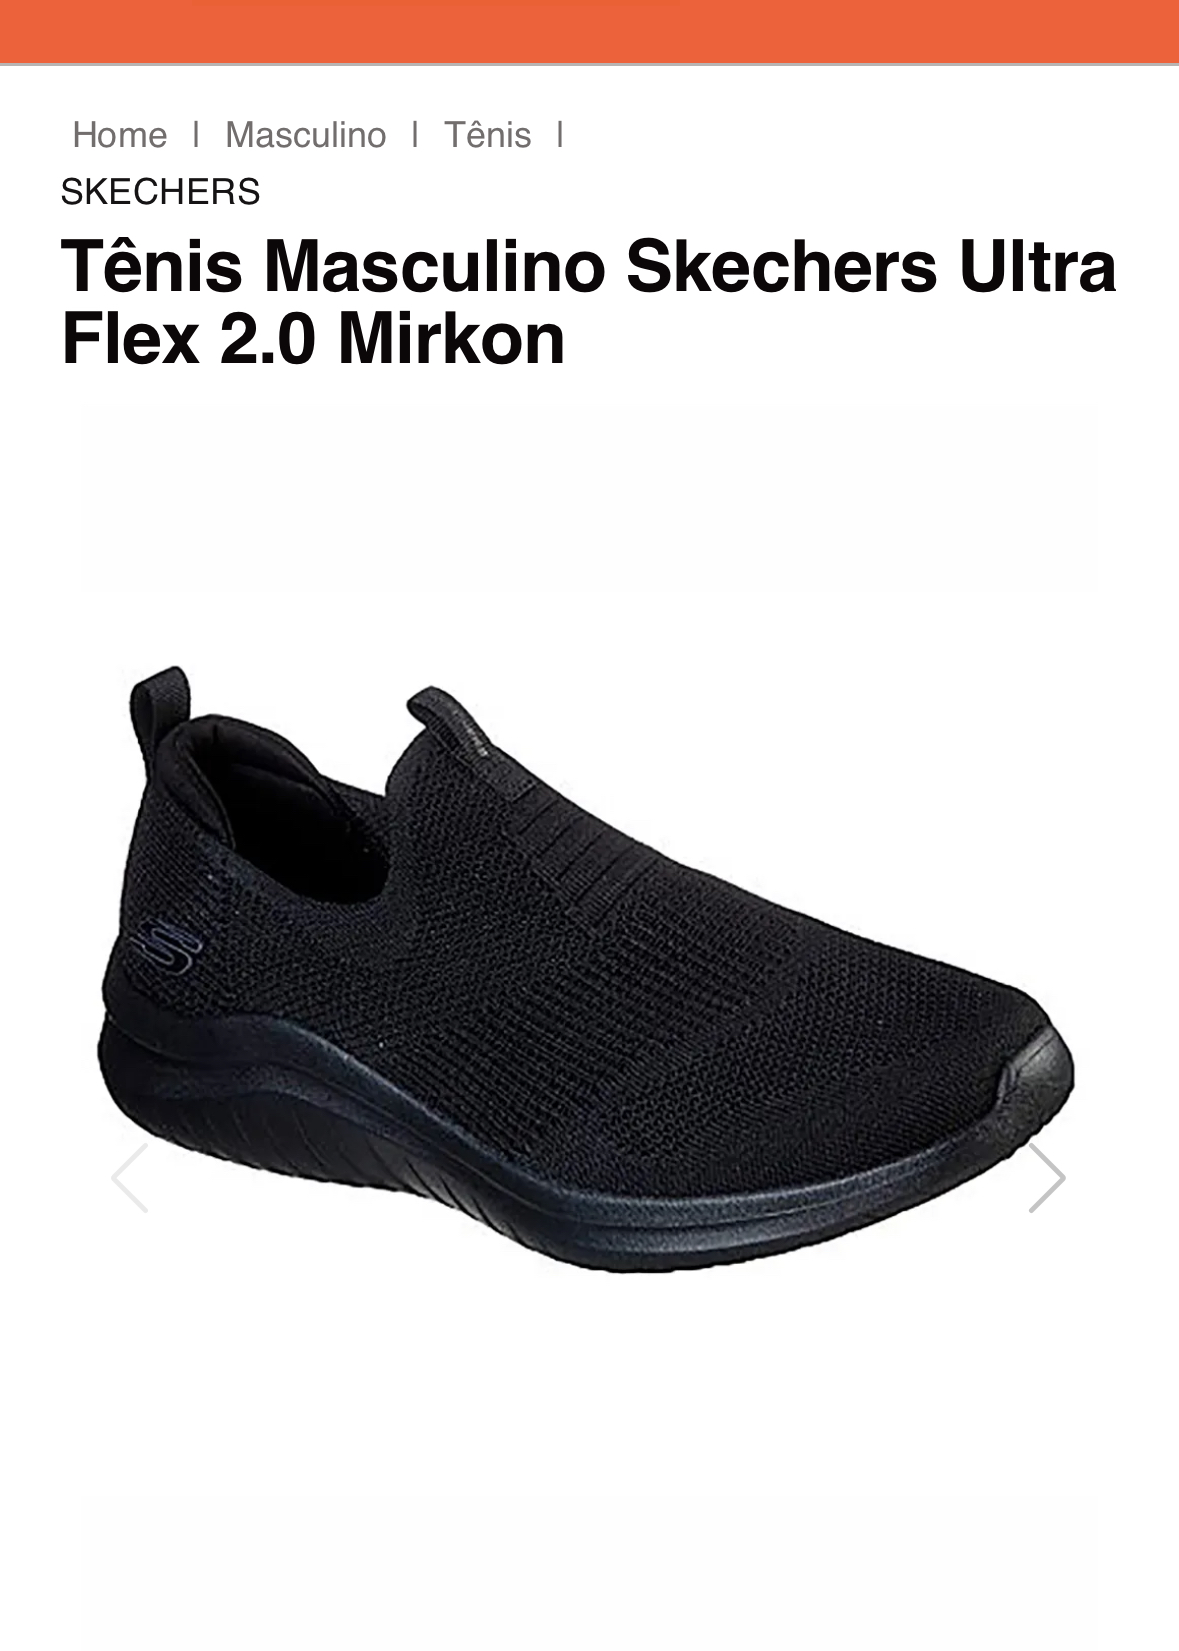 Skechers Ultra Flex 2.0